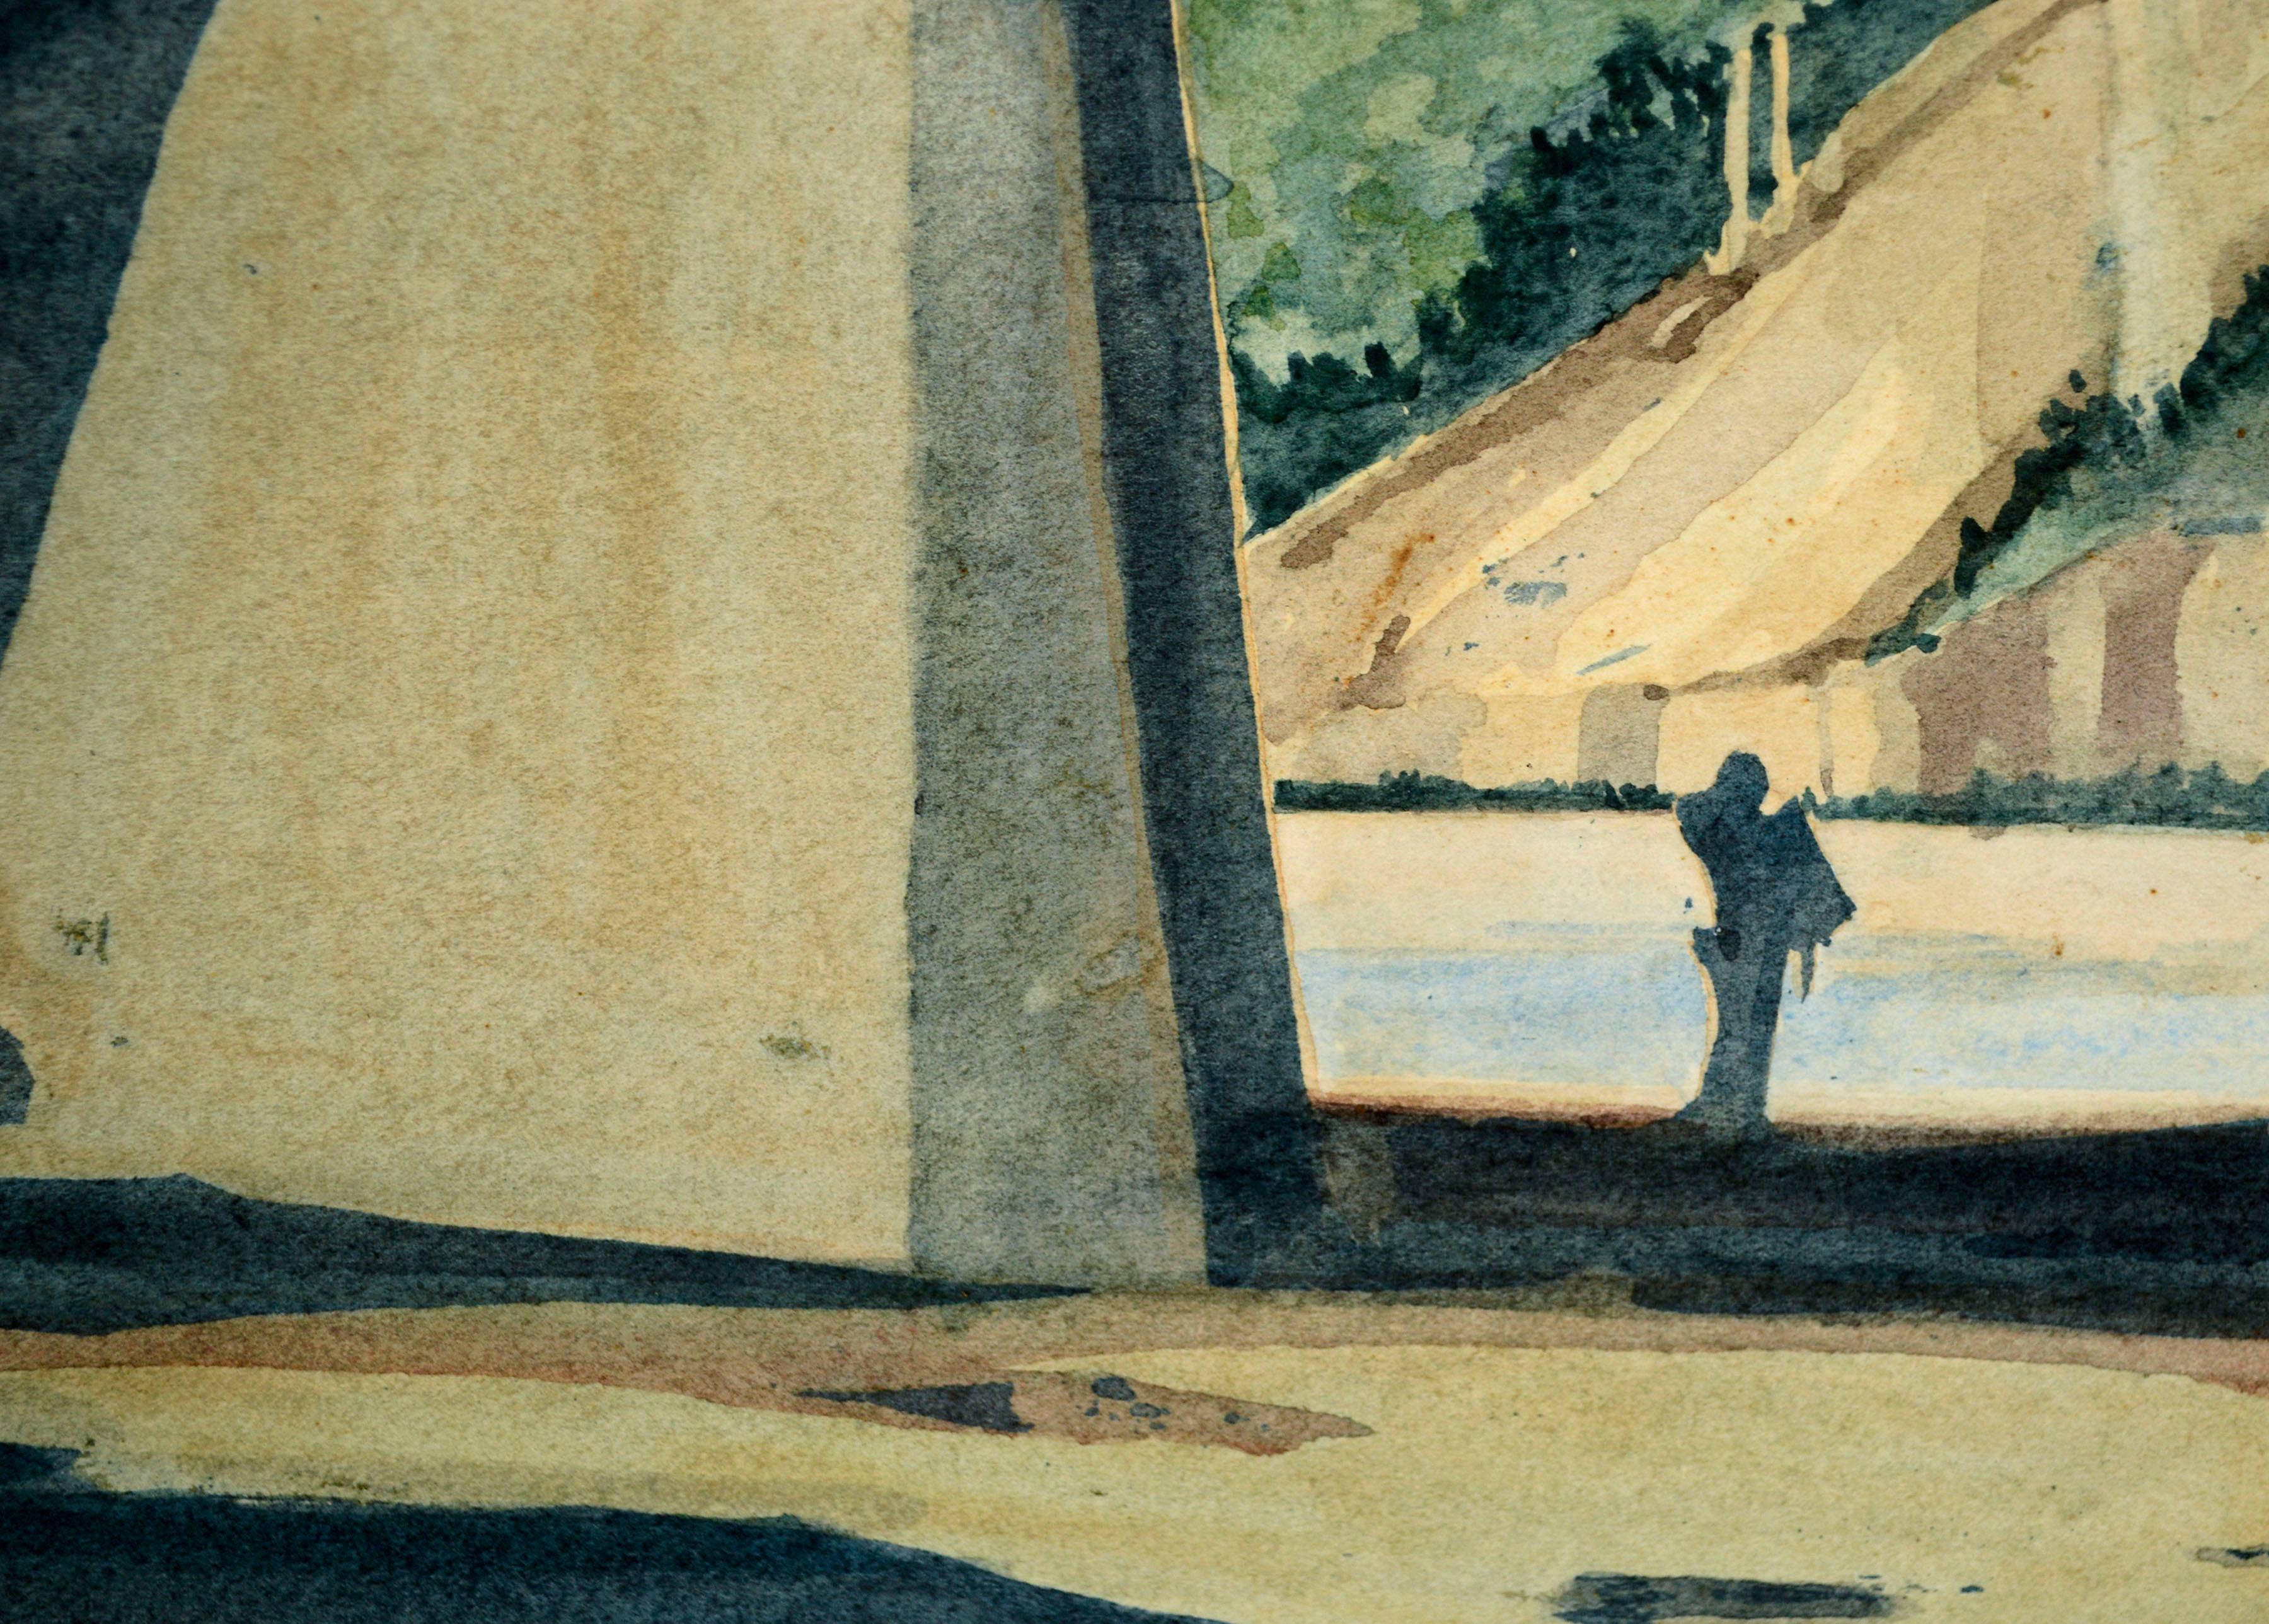 Aquarelle de paysage vintage du milieu des années 1970 représentant de petites figures sur le célèbre pont du chemin de fer Santa Cruz Boardwalk par Laura Manss Matarazzo (américaine, née en 1955), 1975. Cette représentation du pont emblématique est